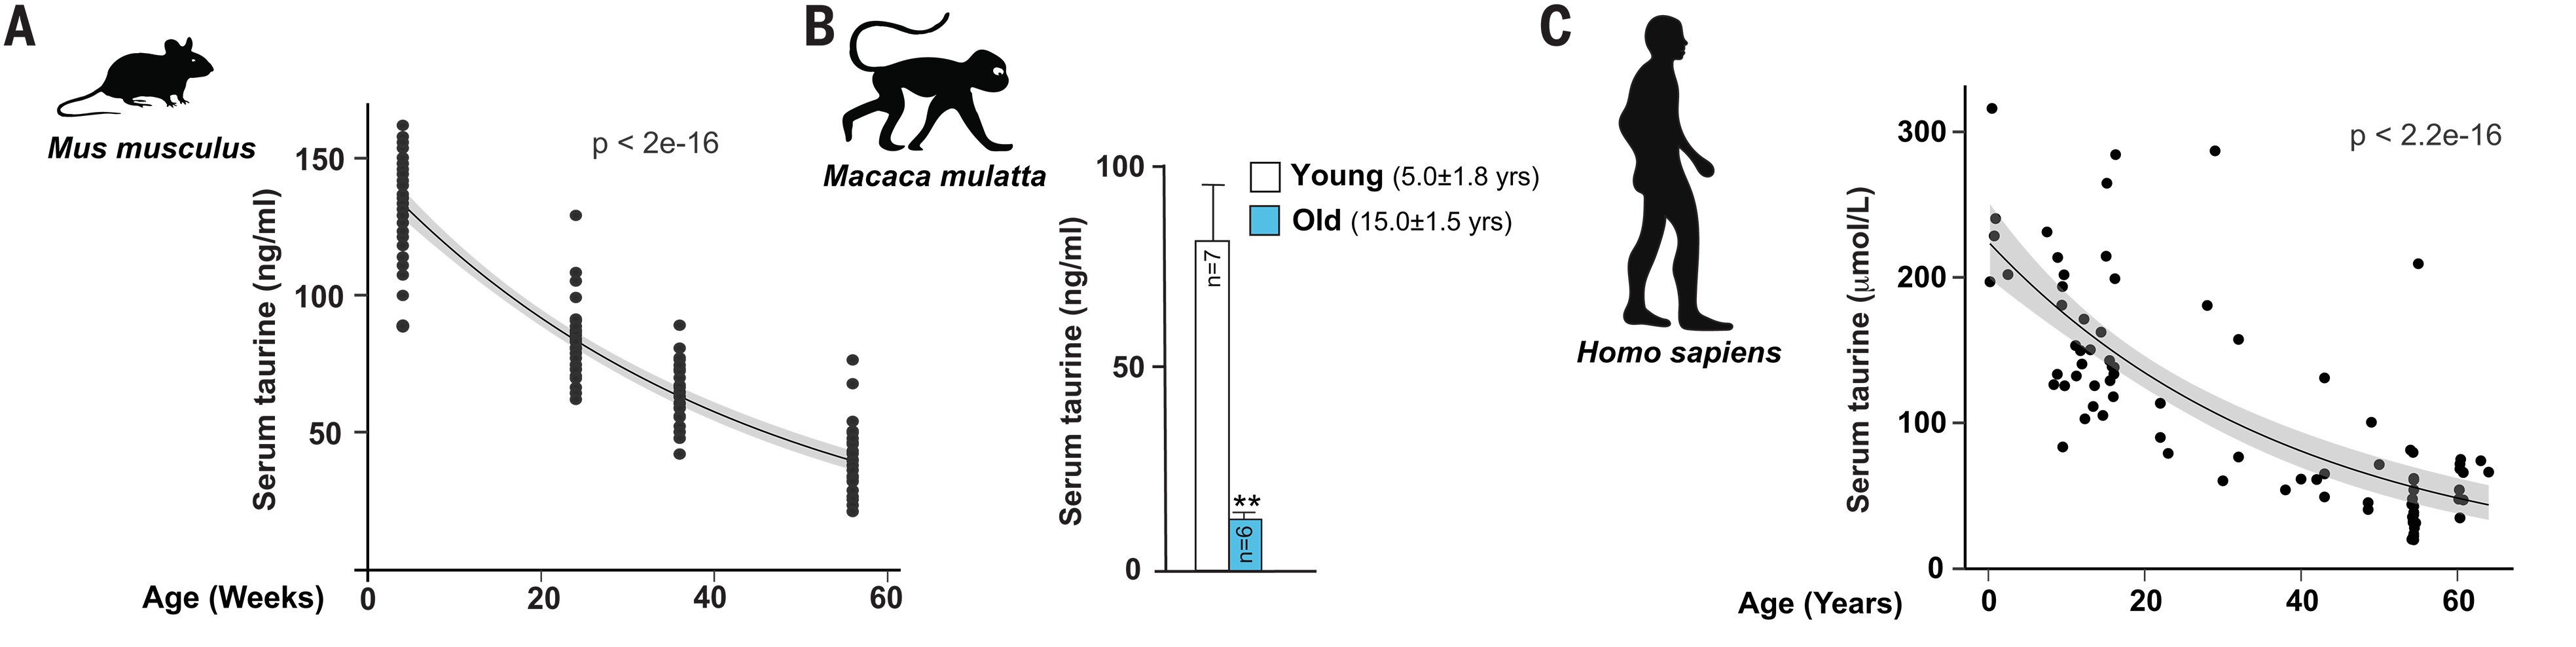 マウス、サル、人間の血中タウリン濃度は年齢と共に変化する